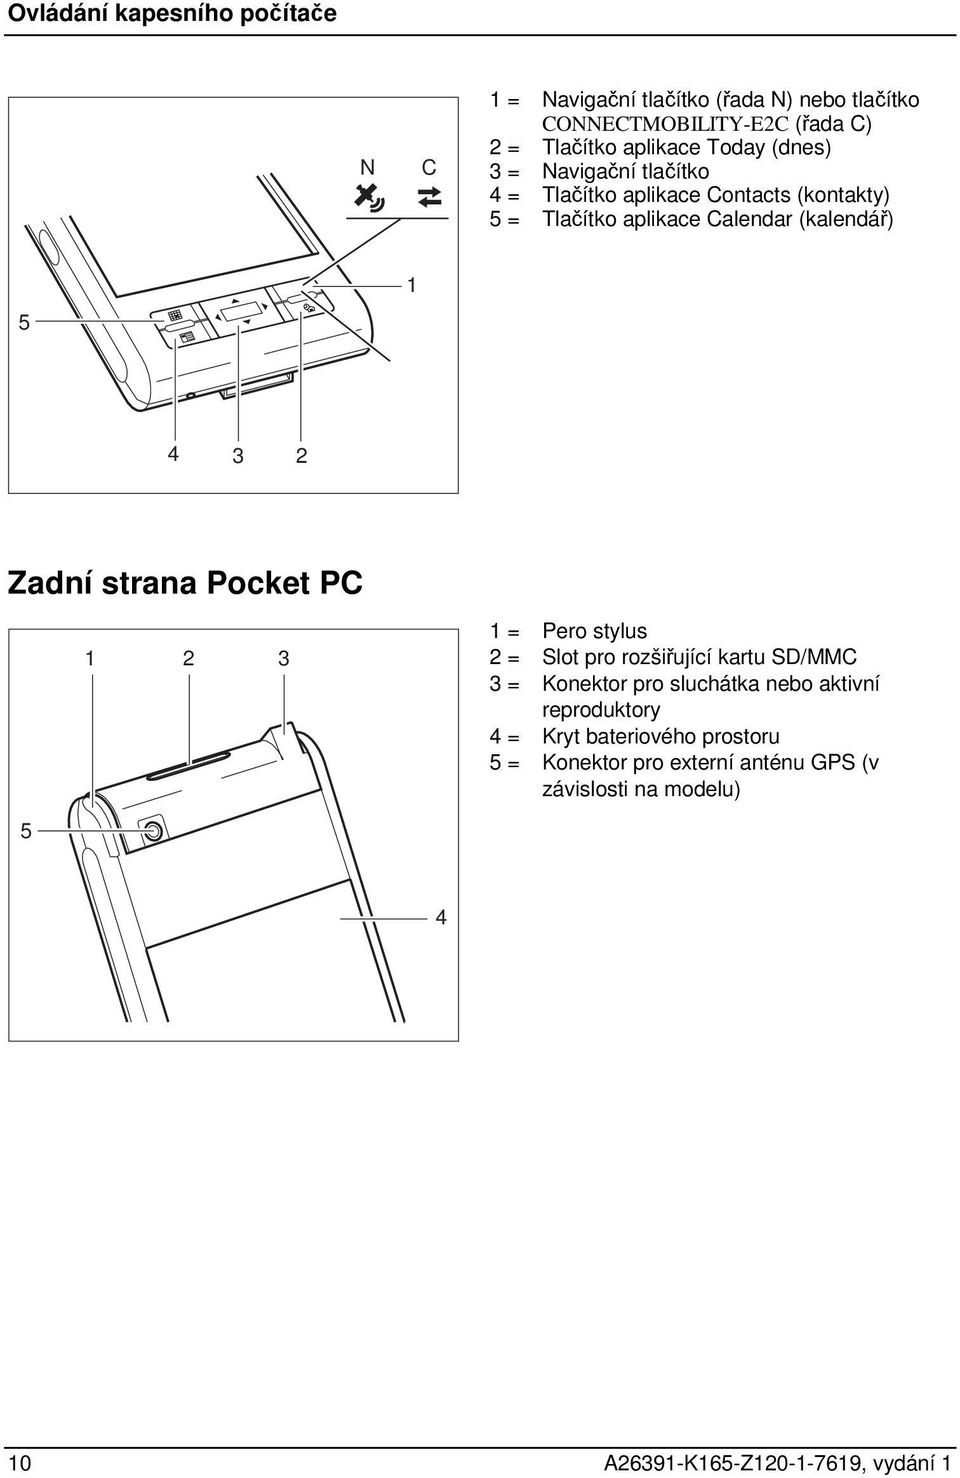 Zadní strana Pocket PC 1 2 3 1 = Pero stylus 2 = Slot pro rozšiřující kartu SD/MMC 3 = Konektor pro sluchátka nebo aktivní